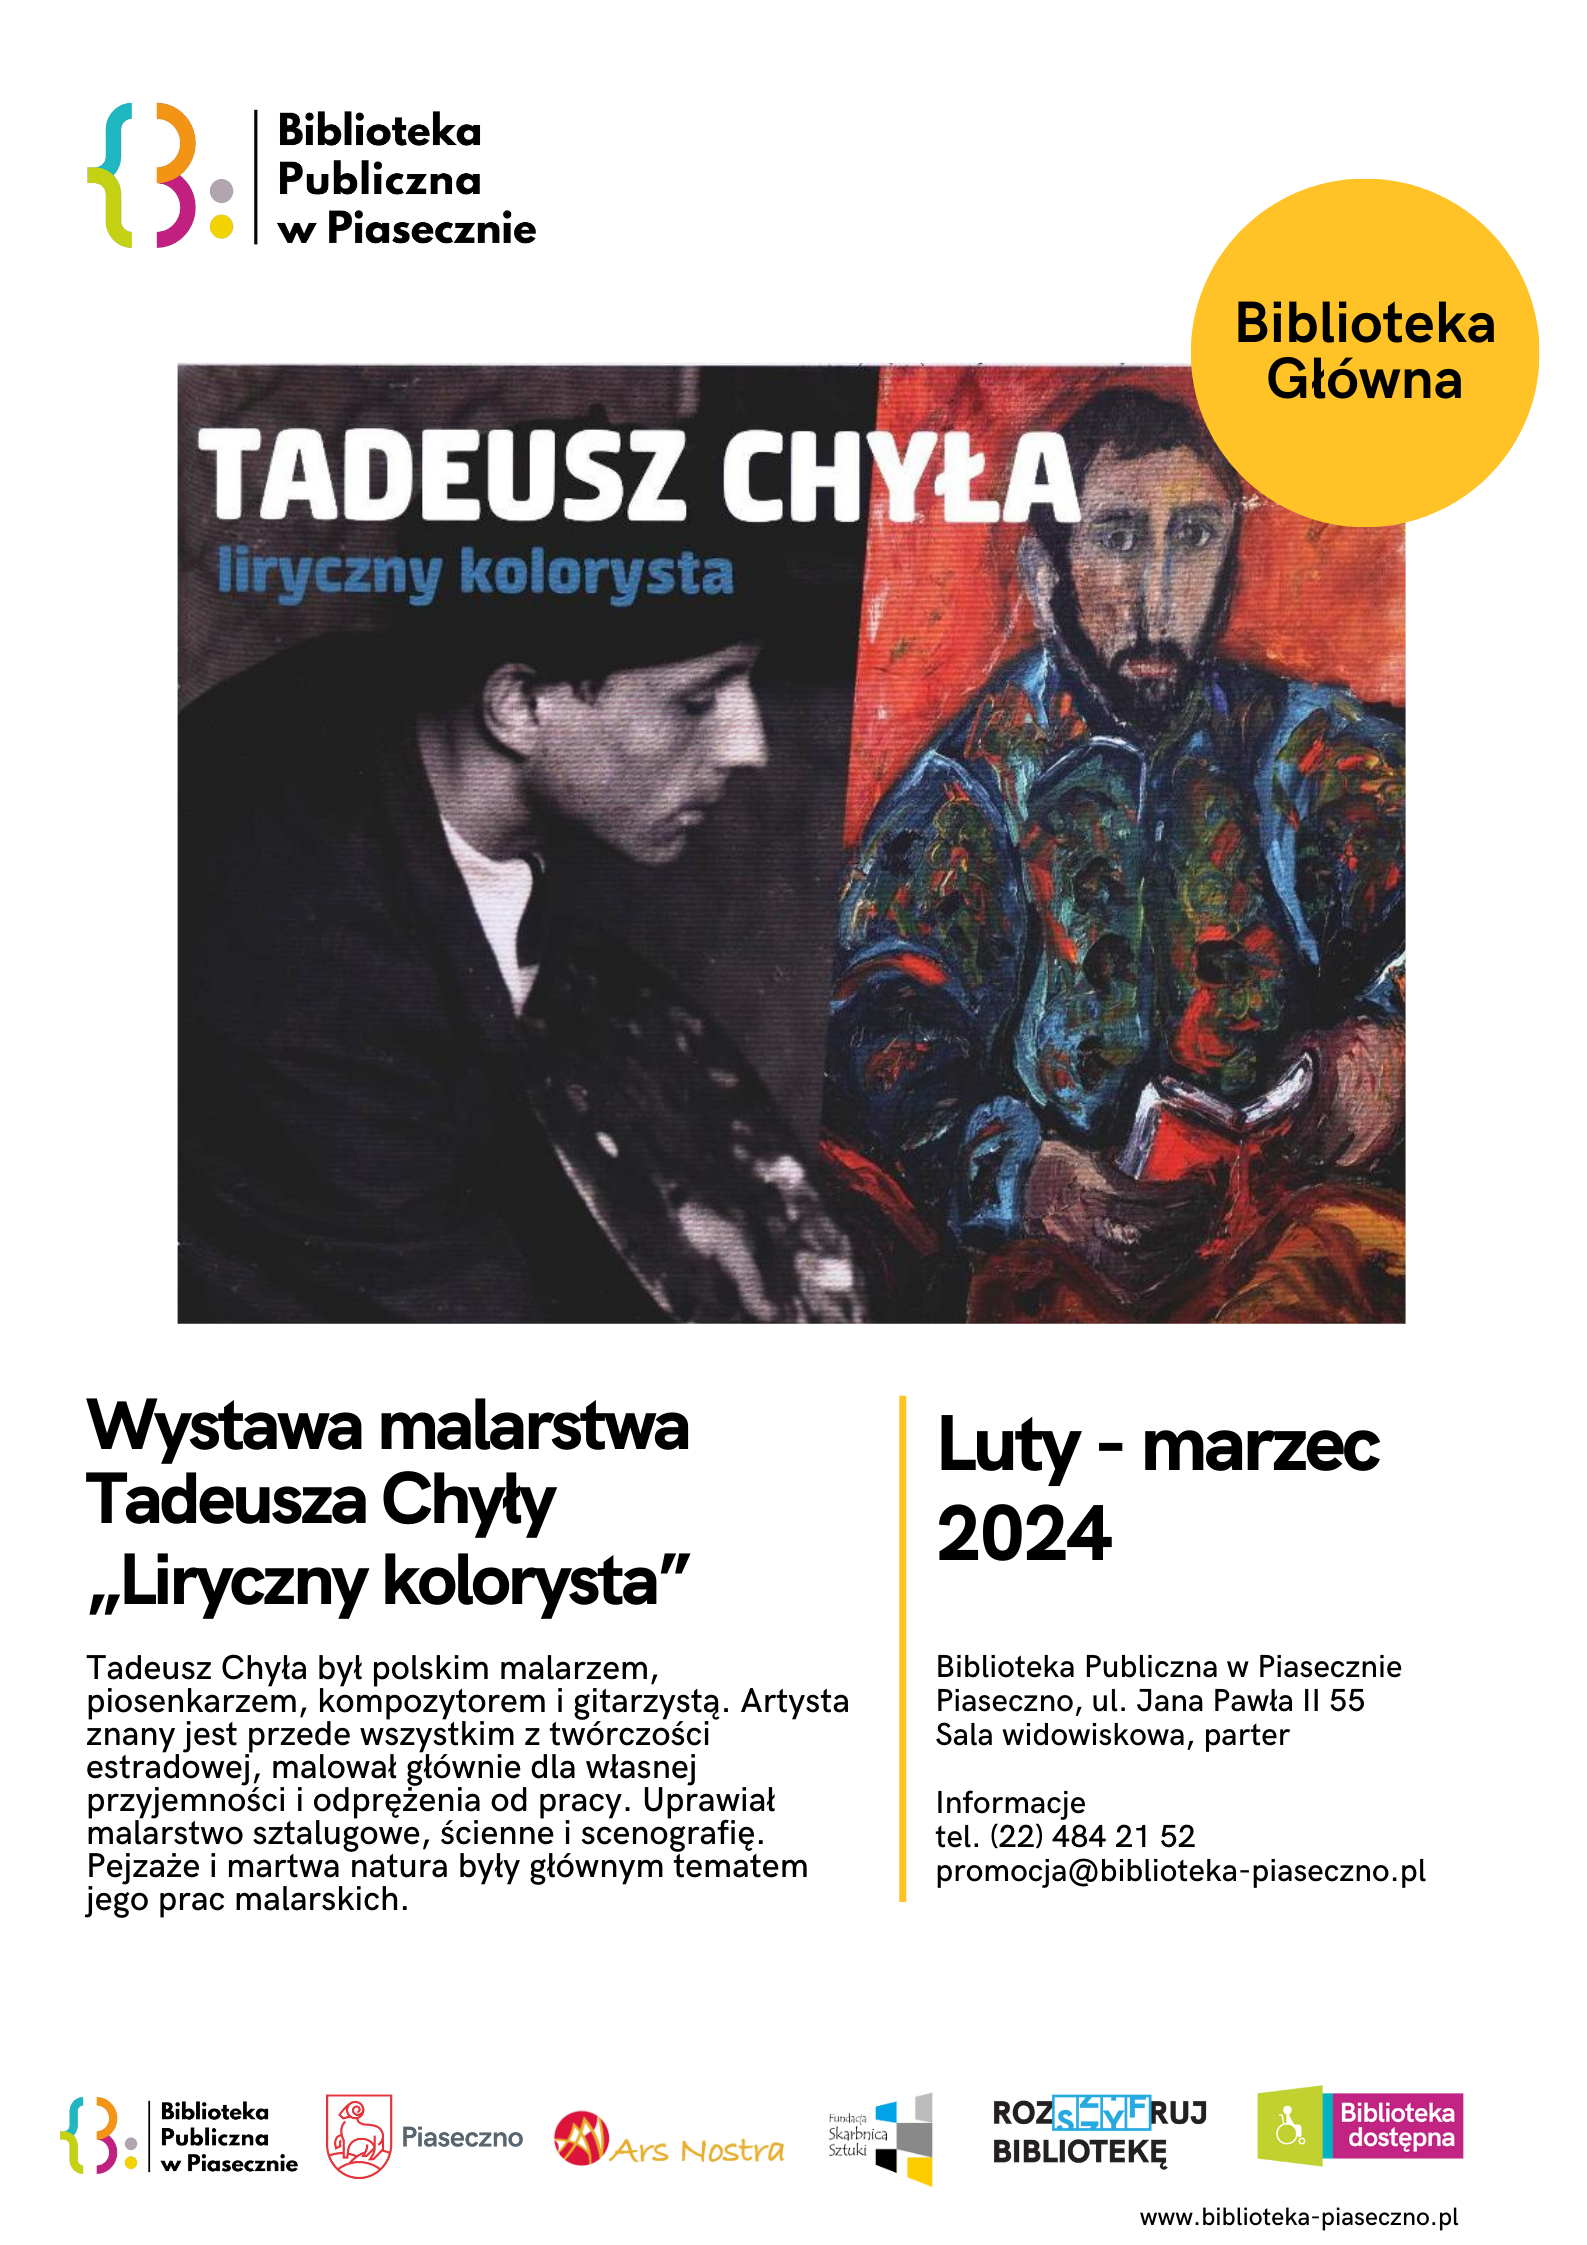 Plakat promujący wystawę Tadeusza Chyły "Liryczny Kolorysta" w Bibliotece Głównej